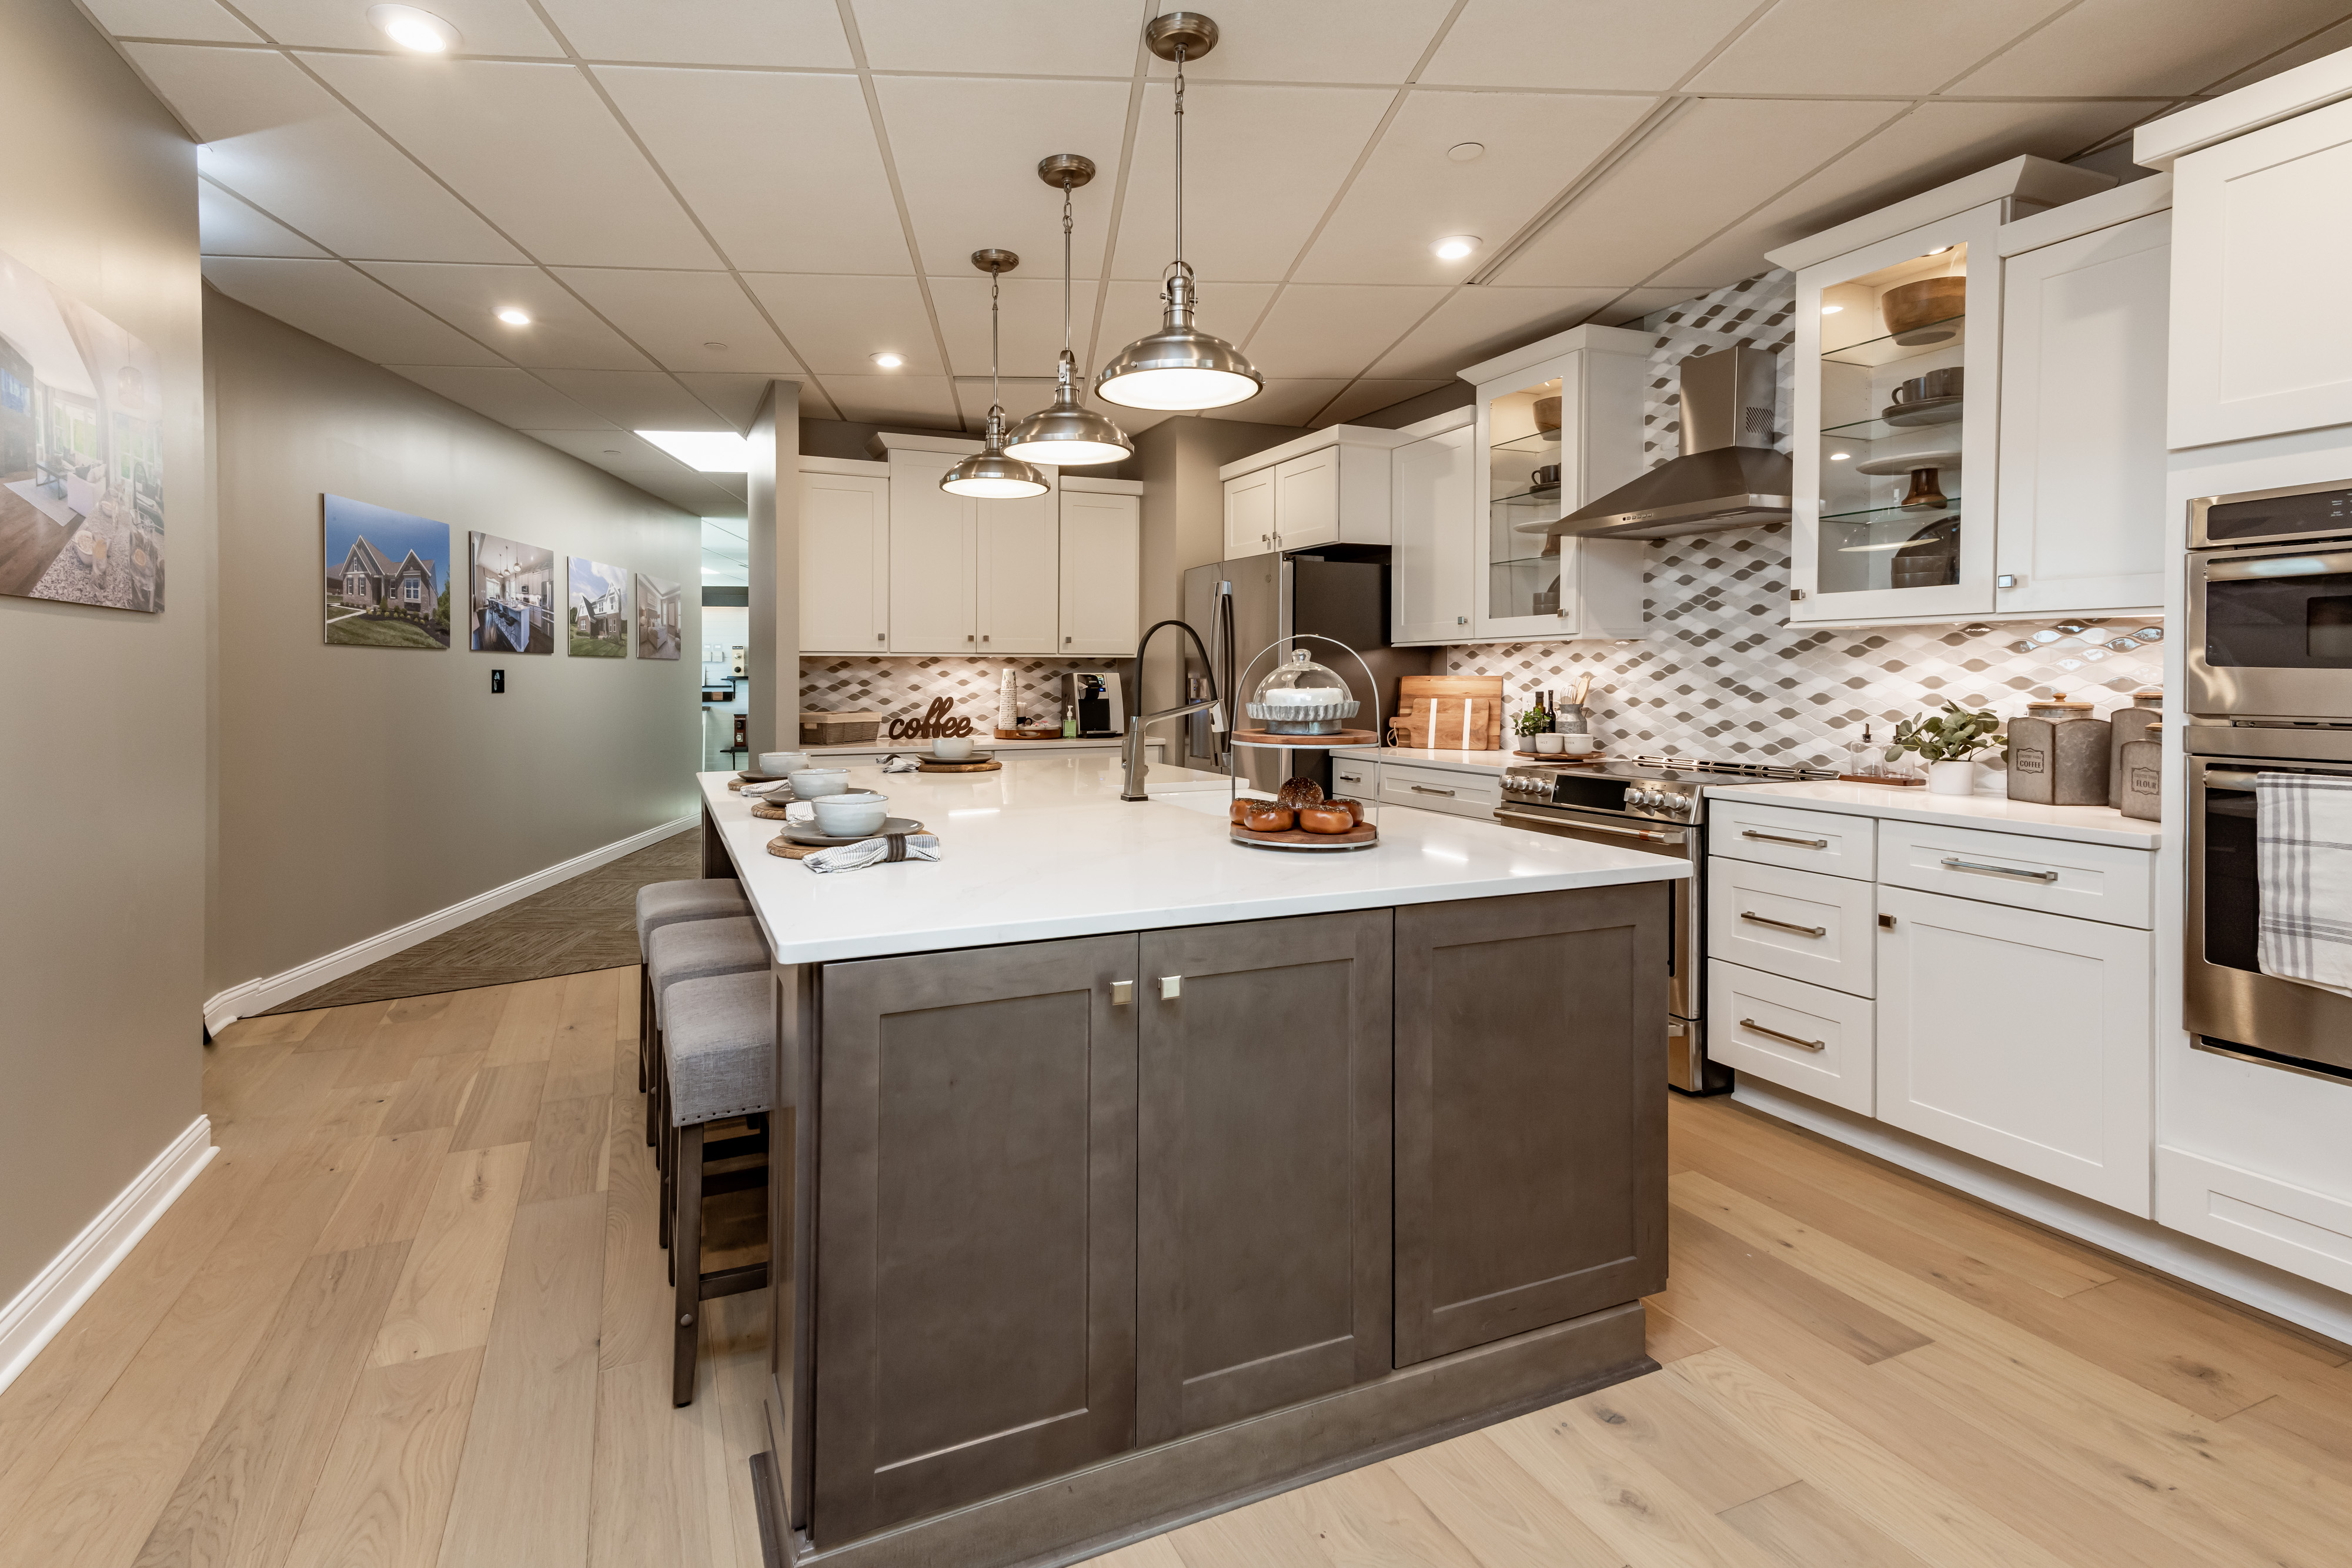 Lifestyle Design Center in Dayton Ohio showcasing our mock kitchen